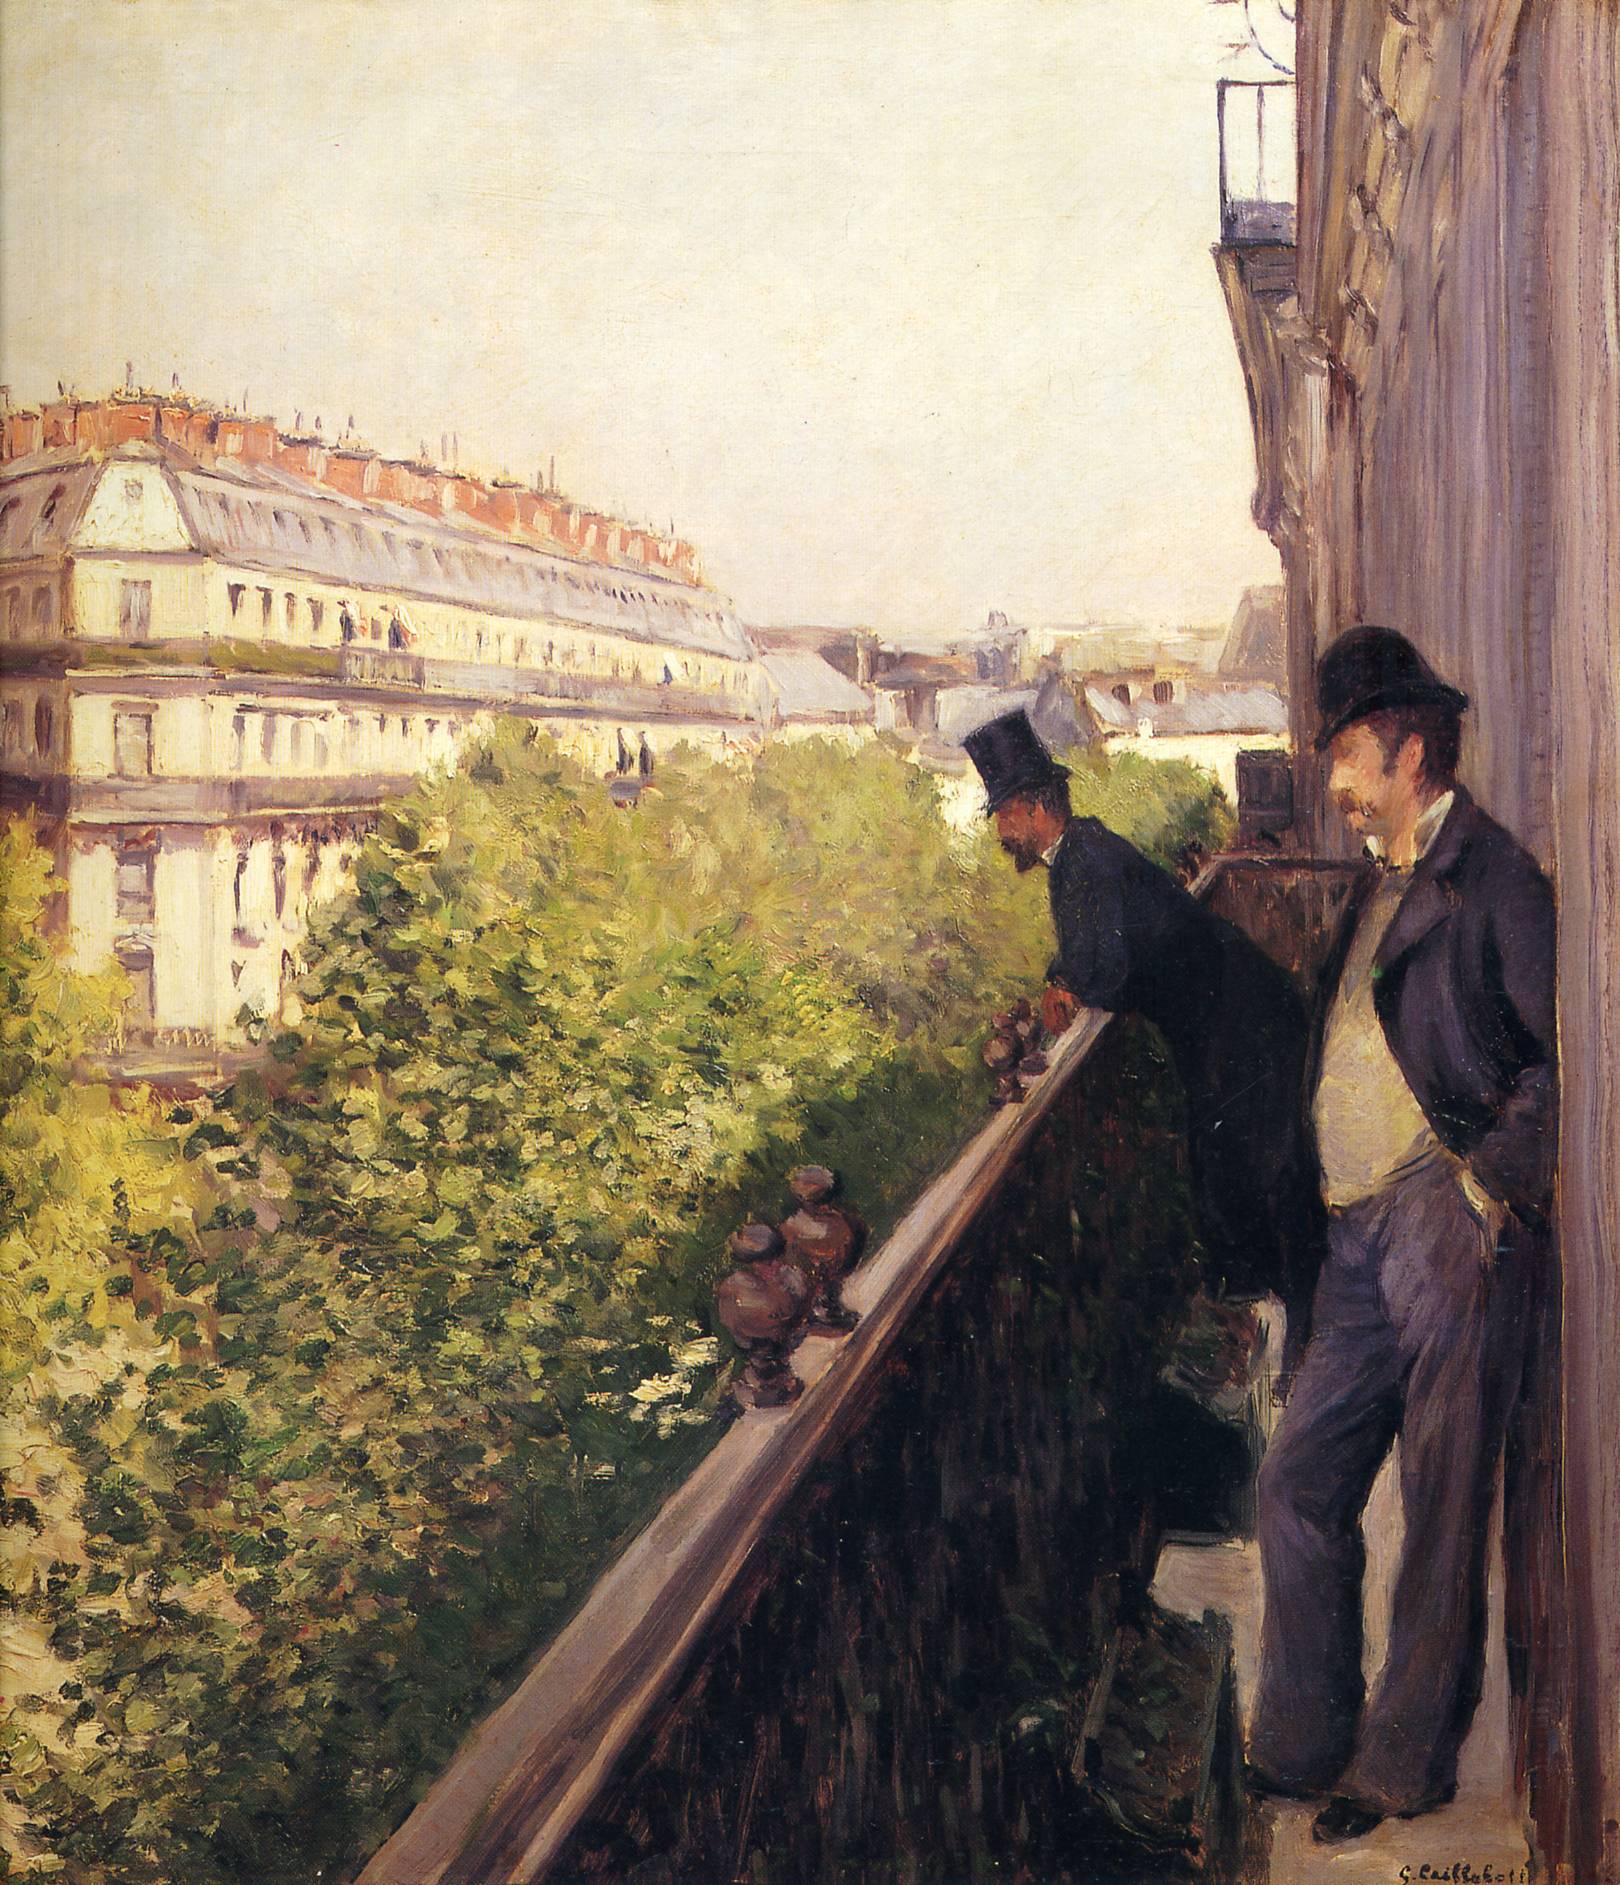 Un bacón, Bulevar Haussmann by Gustave Caillebotte - 1880 - - Colección privada